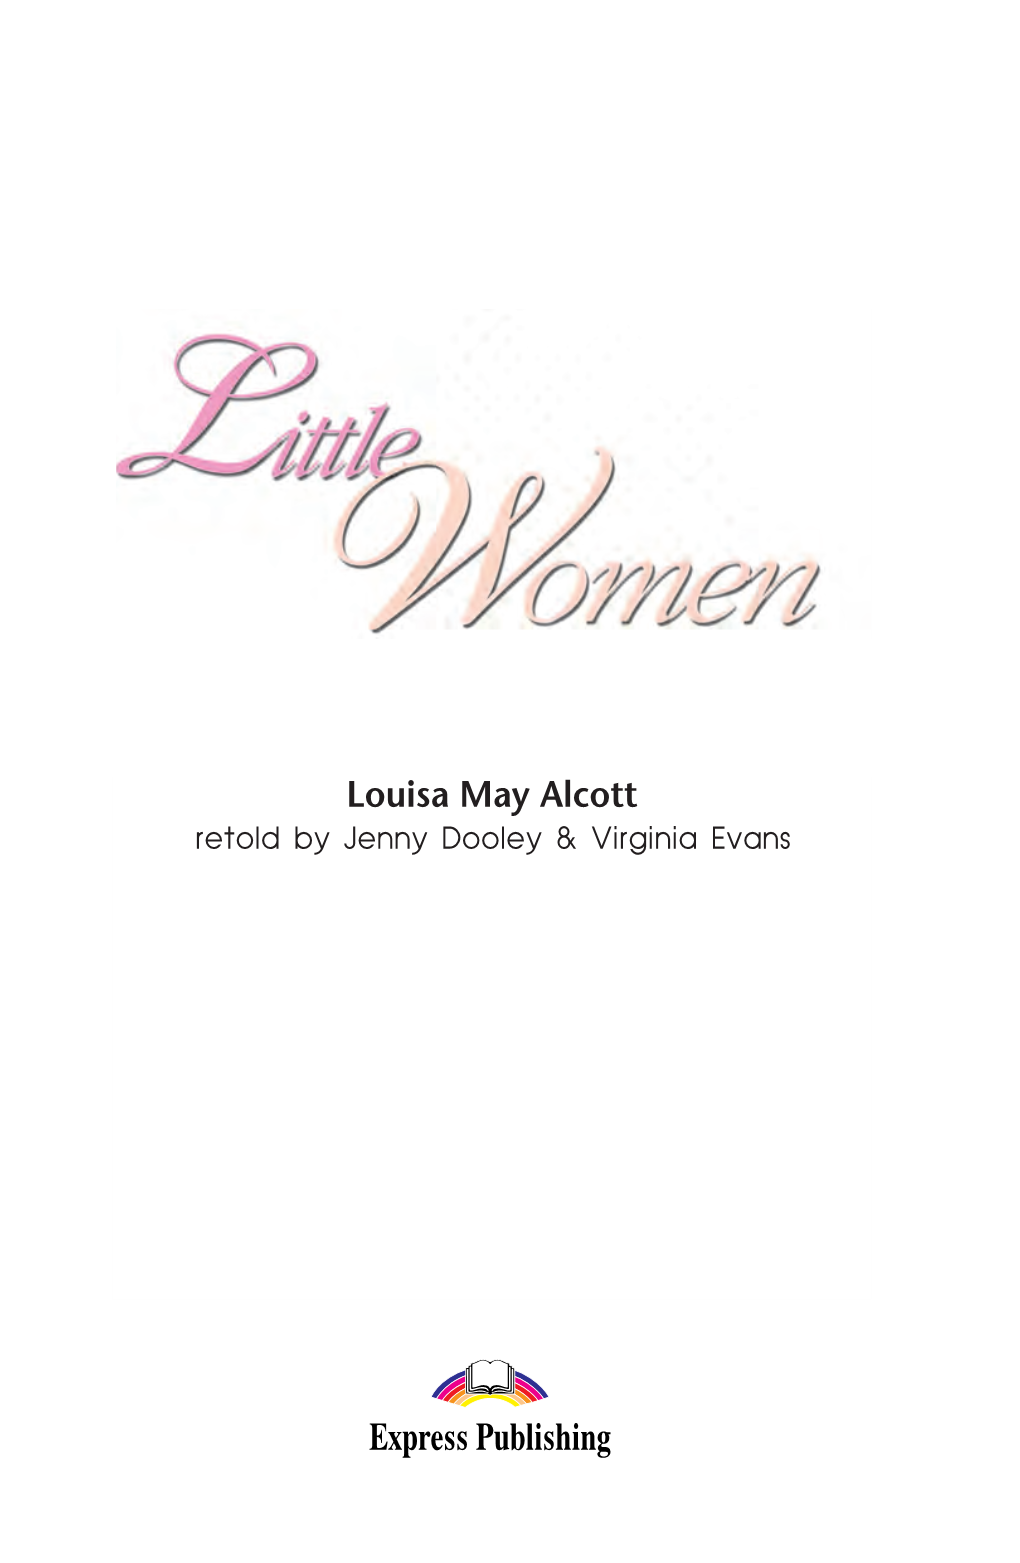 LITTLE WOMEN Reader LITTLE WOMEN Reader 02/02/2012 5:06 ΜΜ Page 1